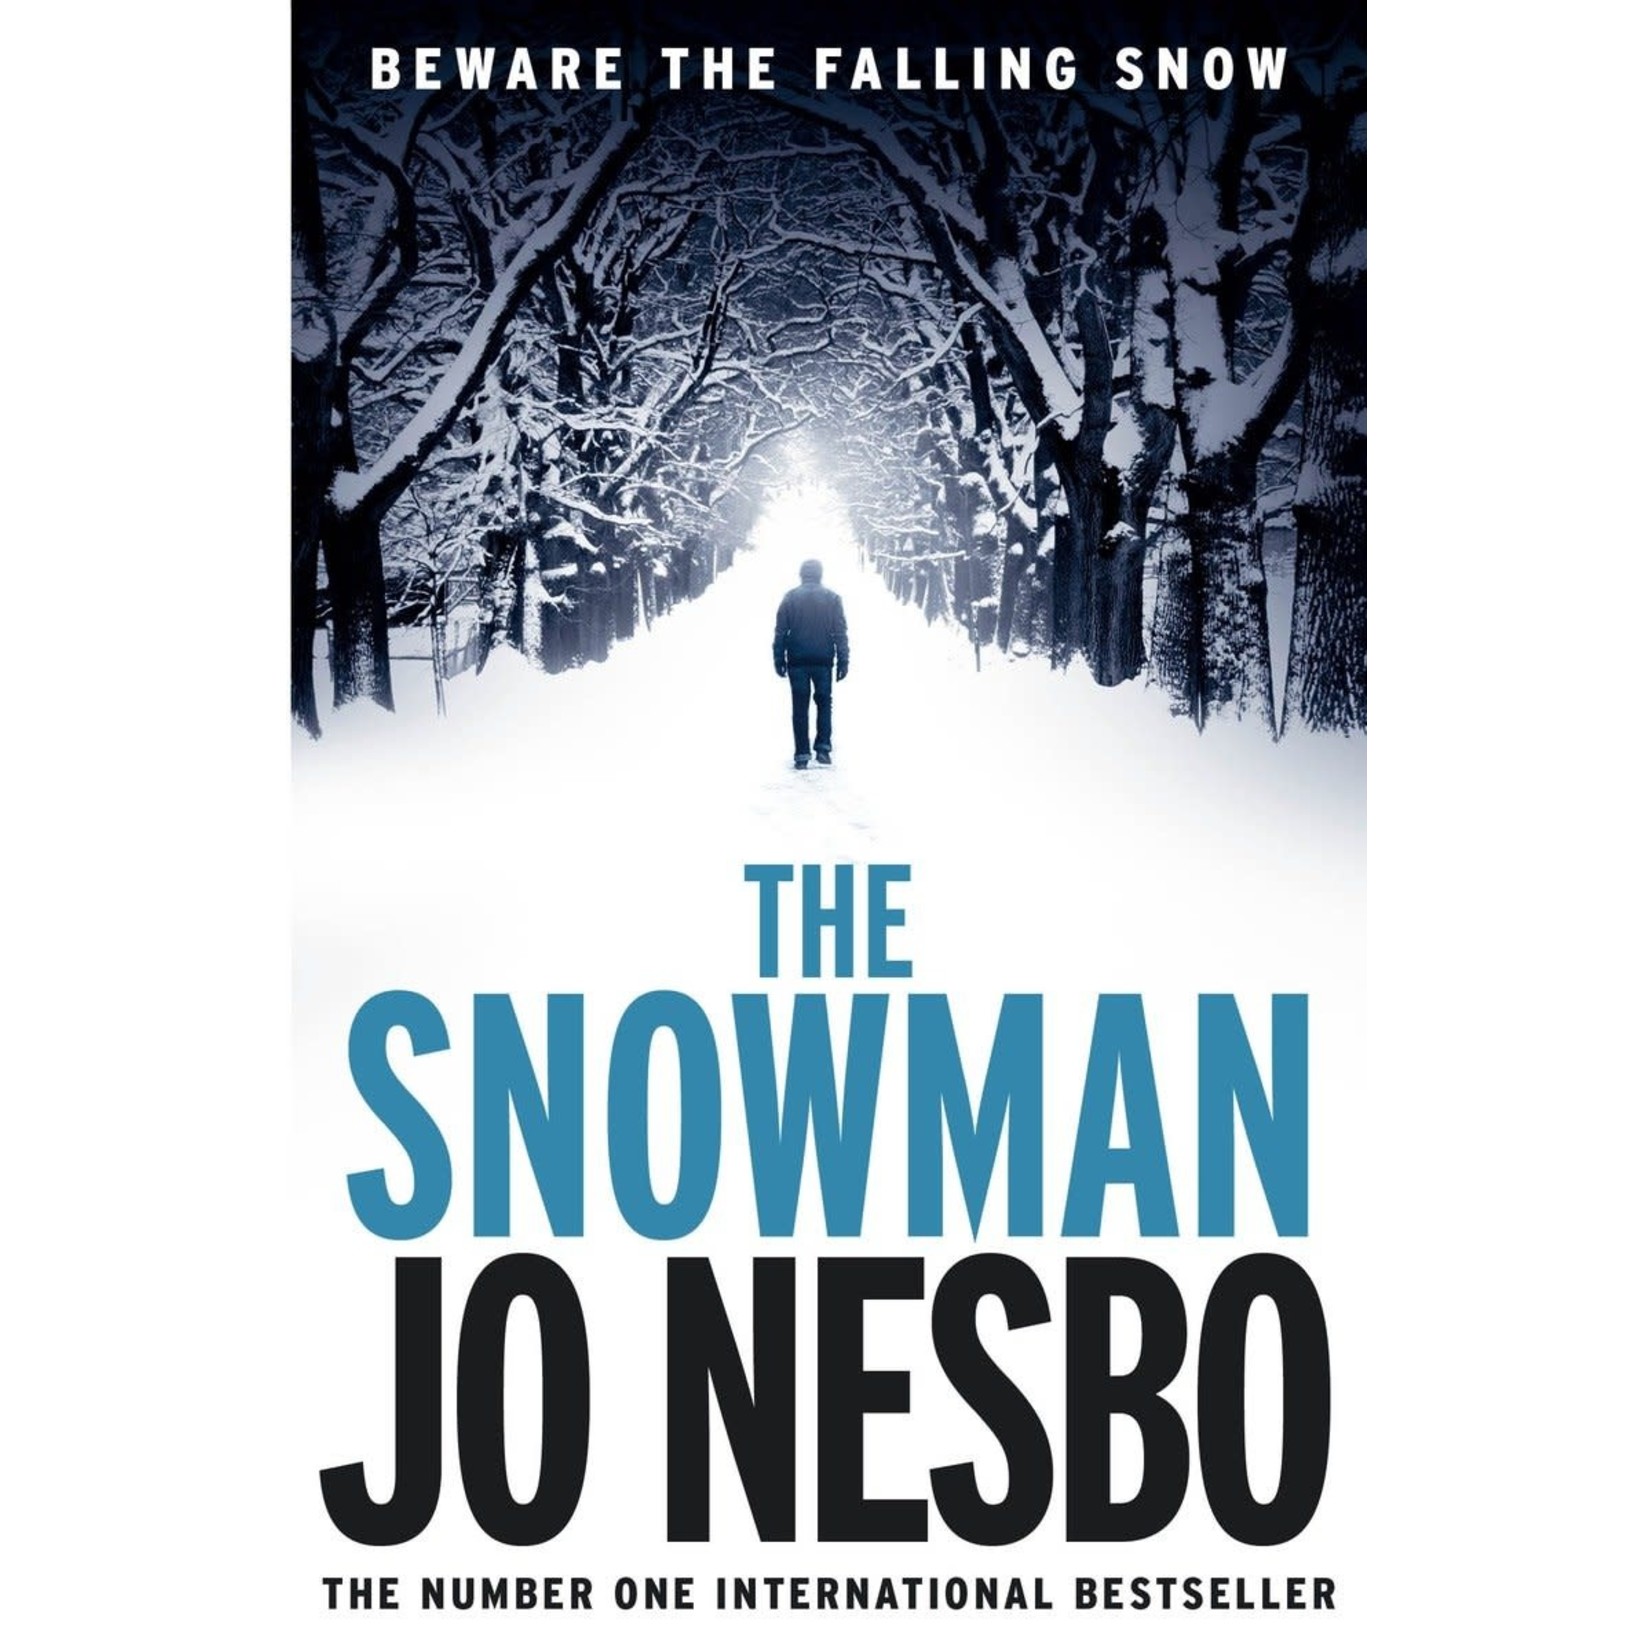 Jo Nesbo The Snowman